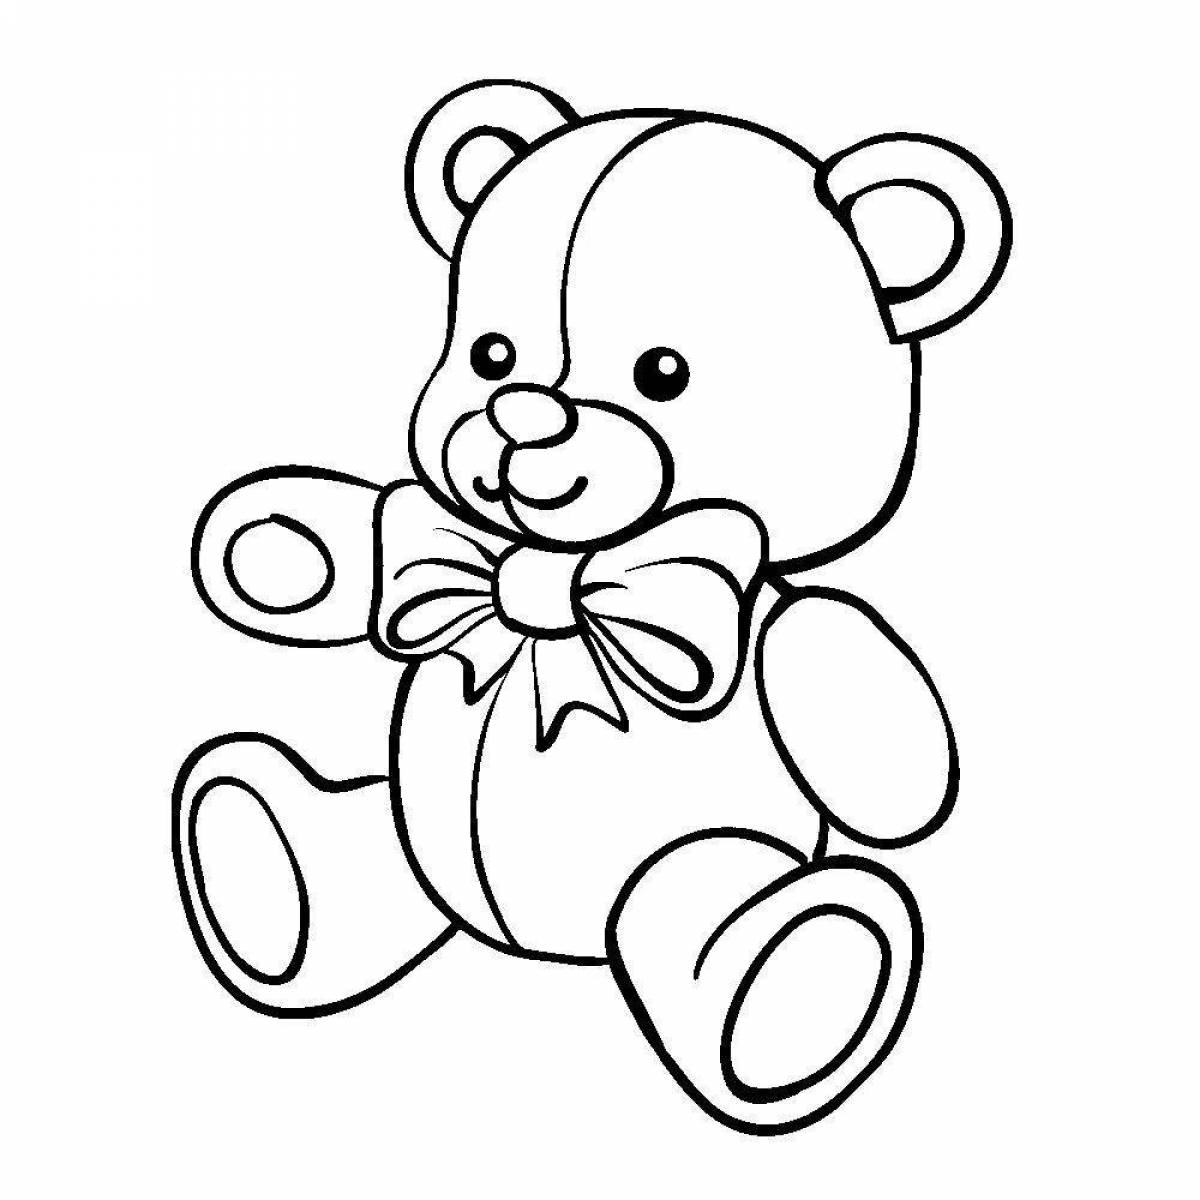 Раскраски медведь для 3 лет - 21 раскраска для детей бесплатно для распечатки и скачивания